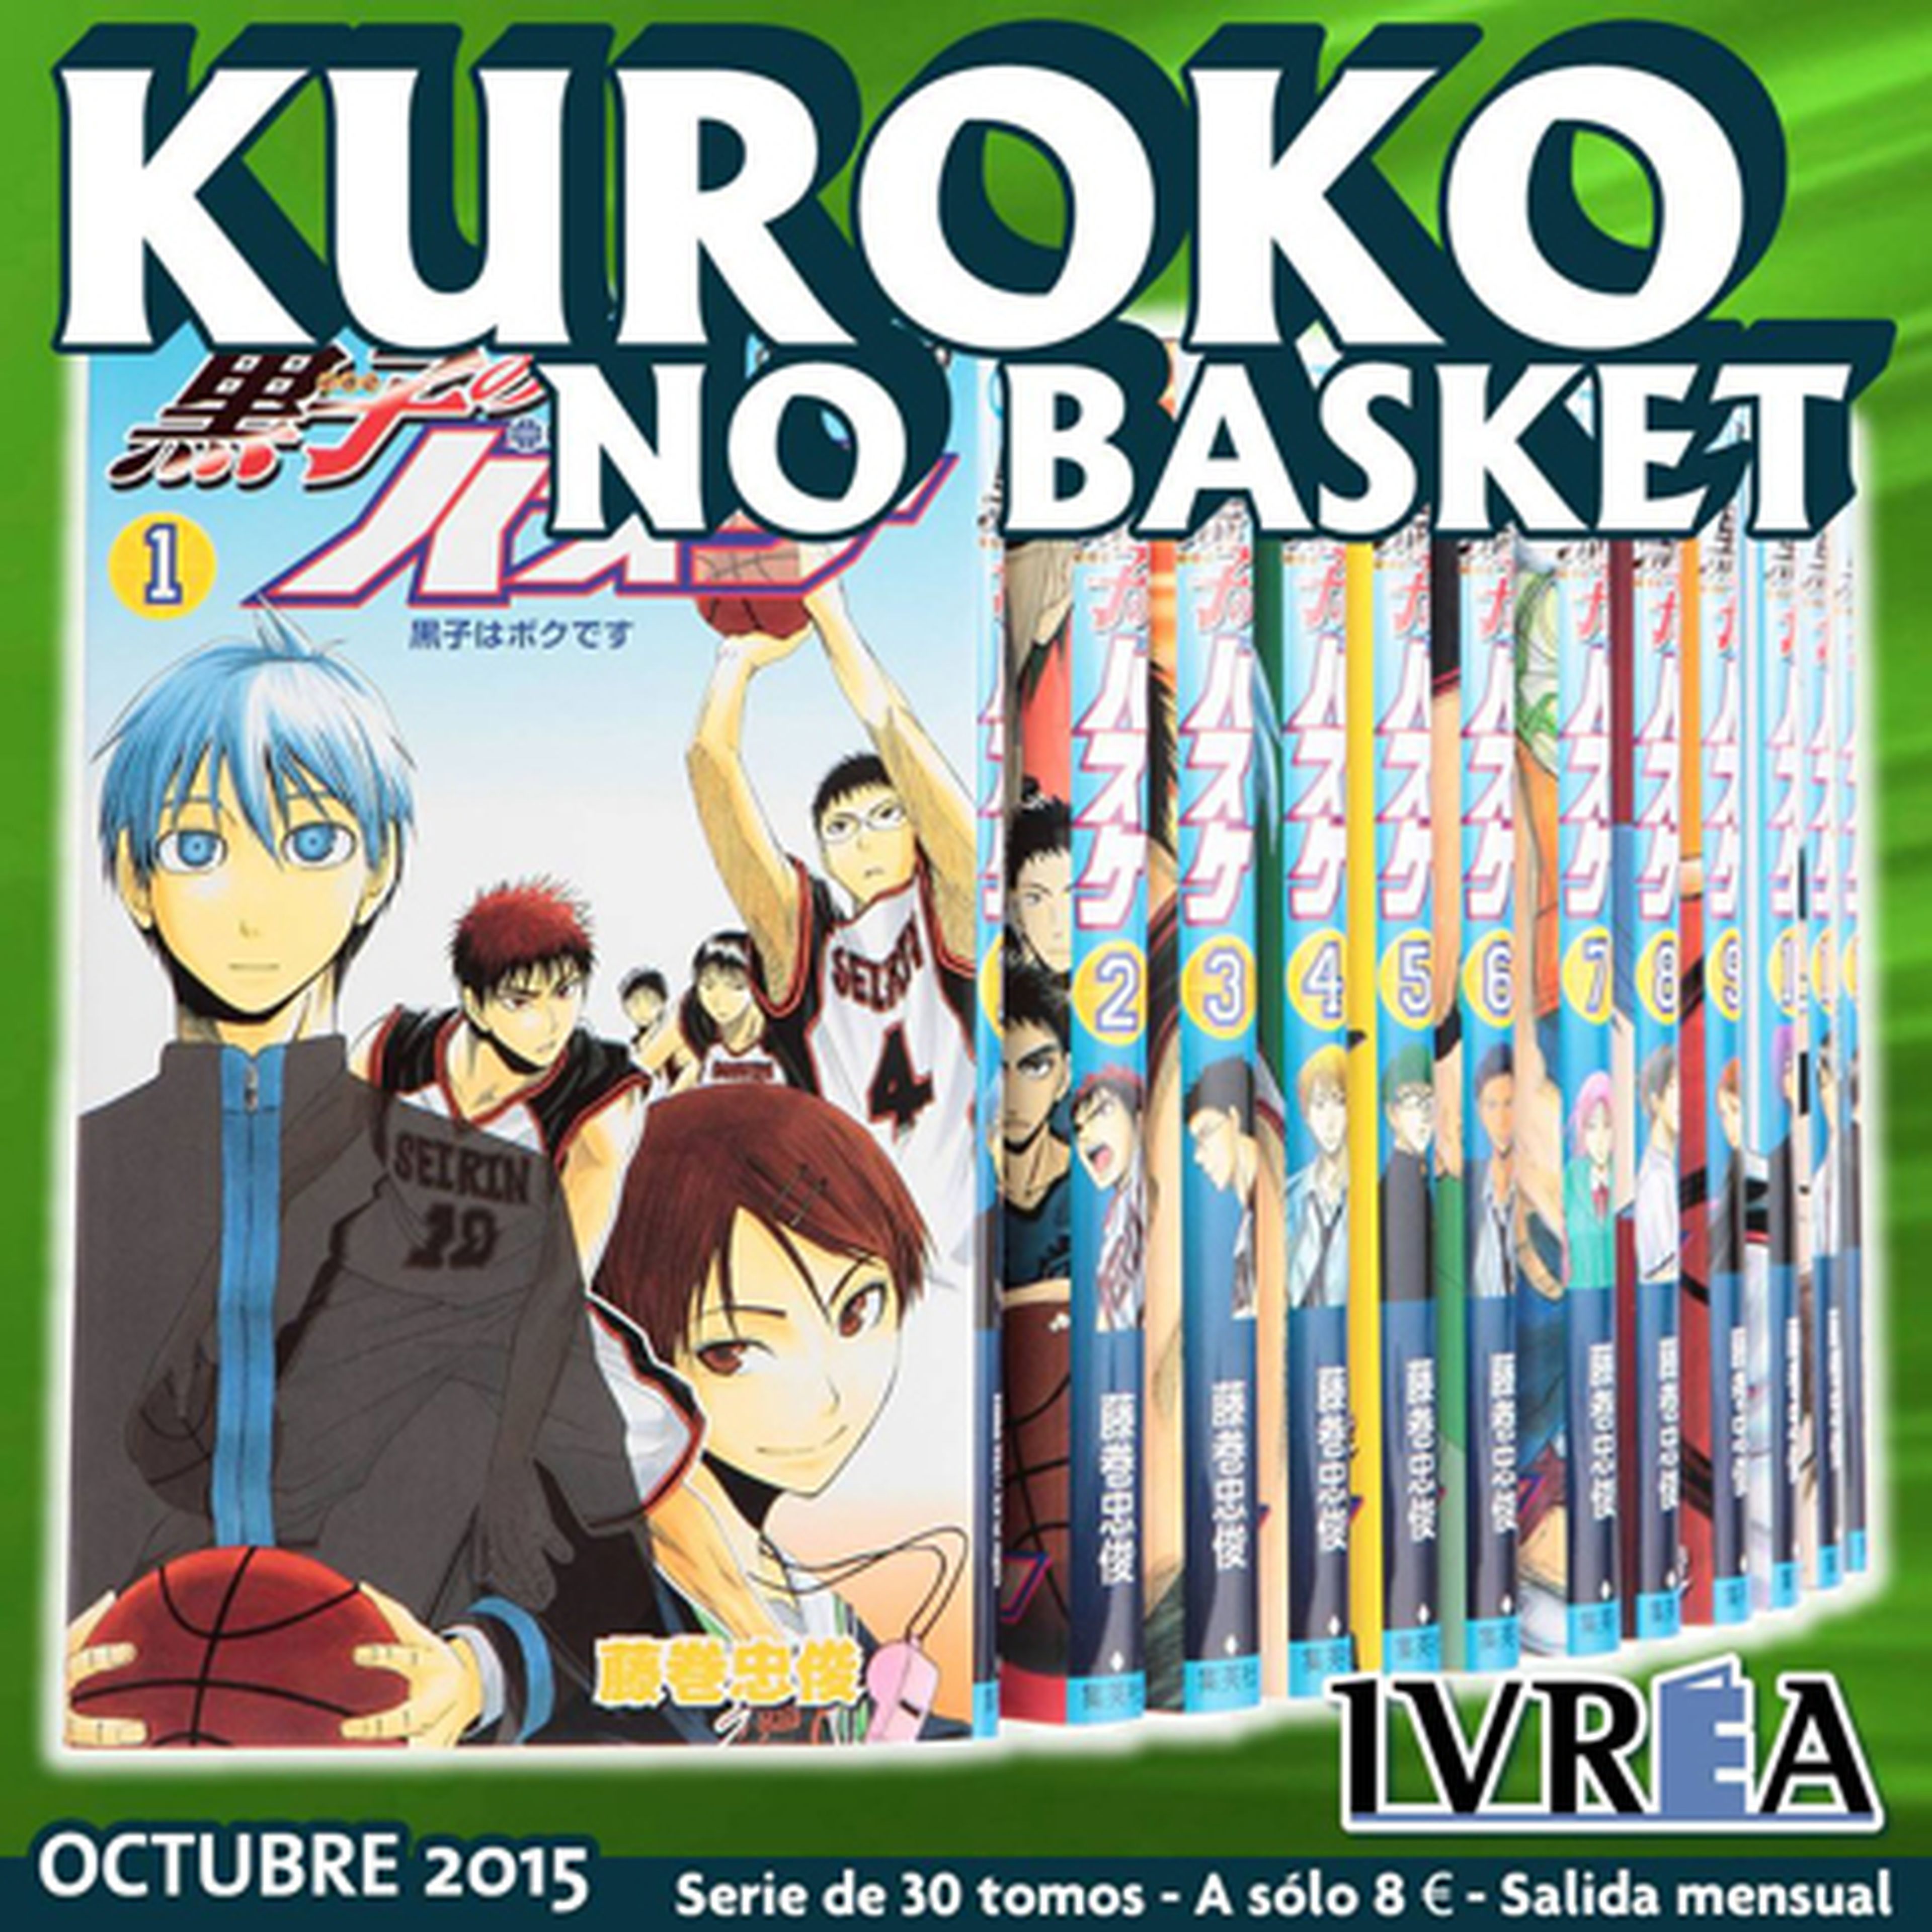 Kuroko no Basket, licenciado en nuestro país